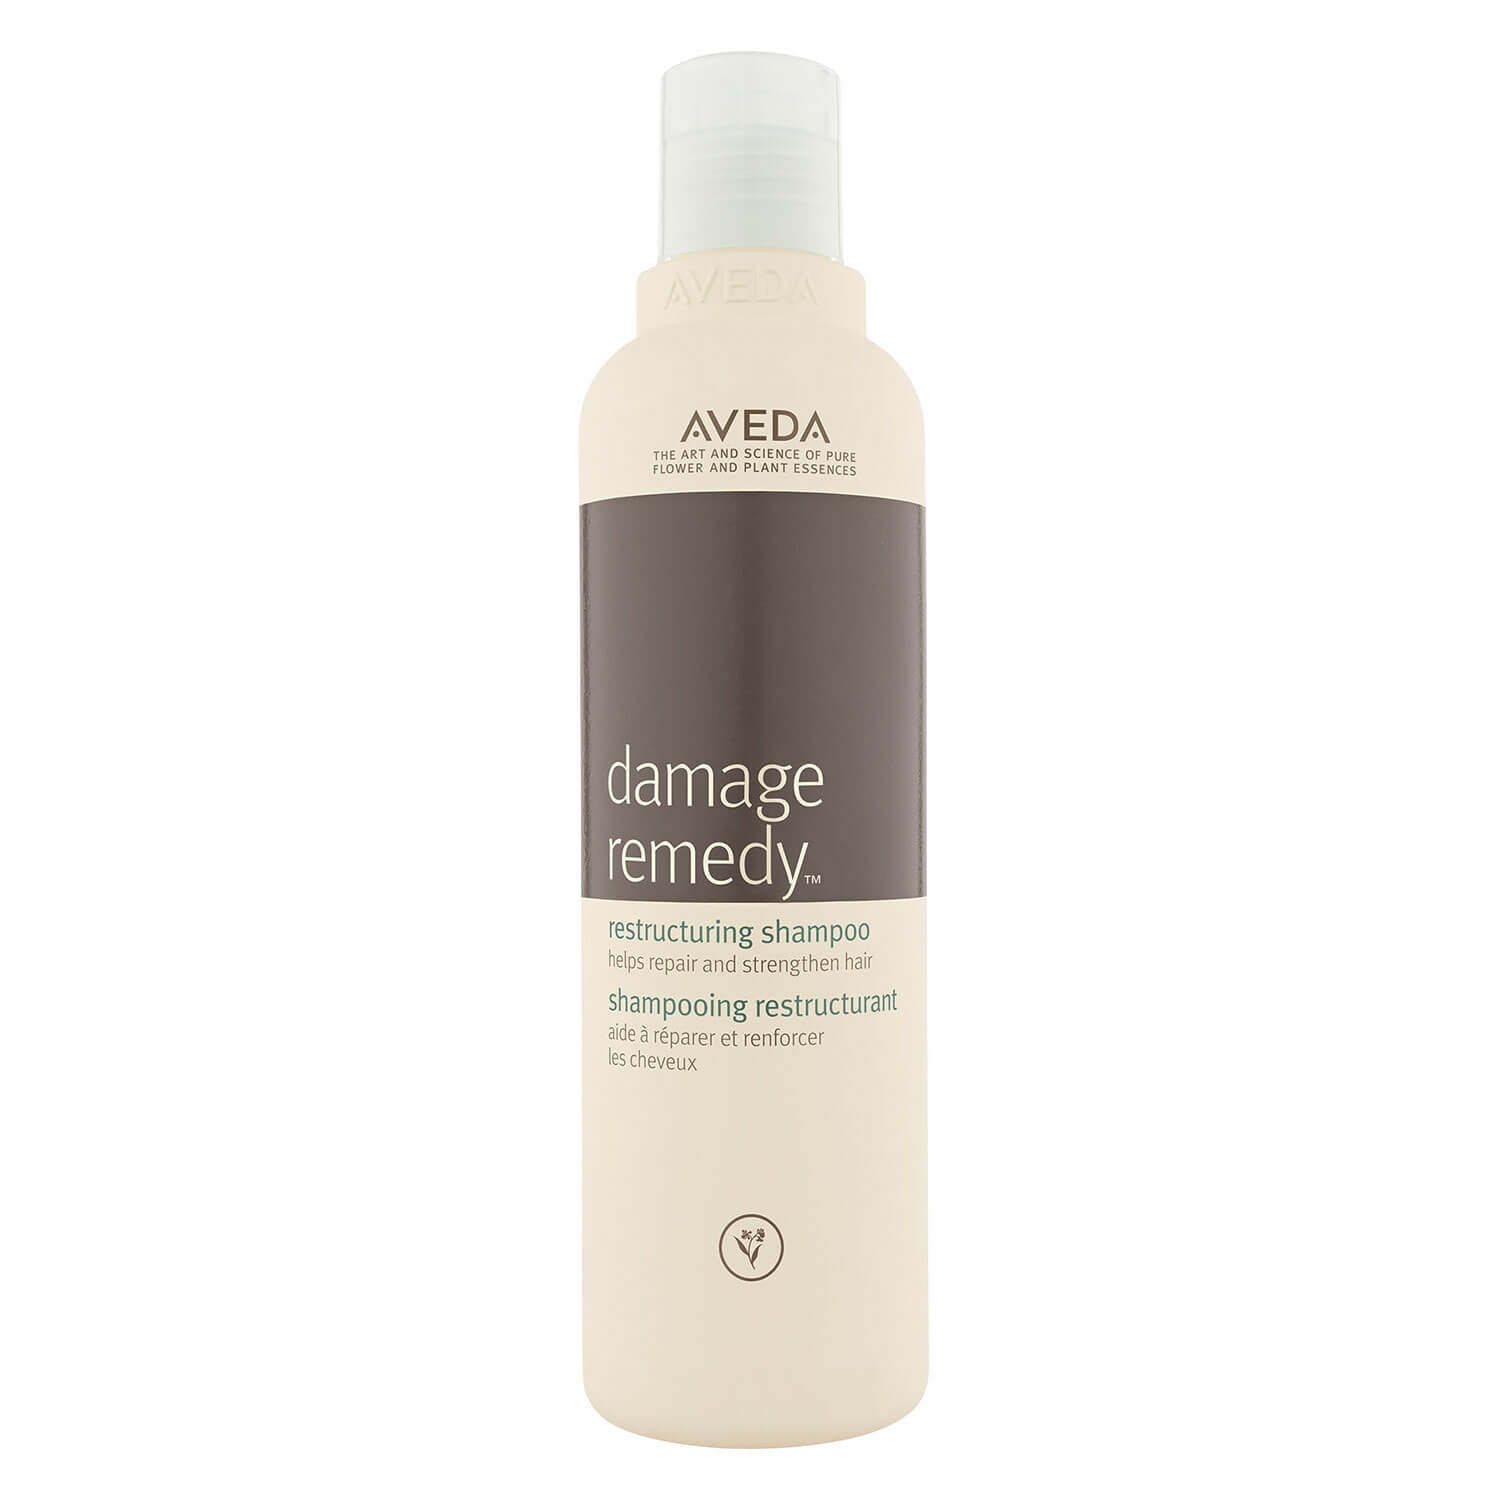 Produktbild von damage remedy - restructuring shampoo